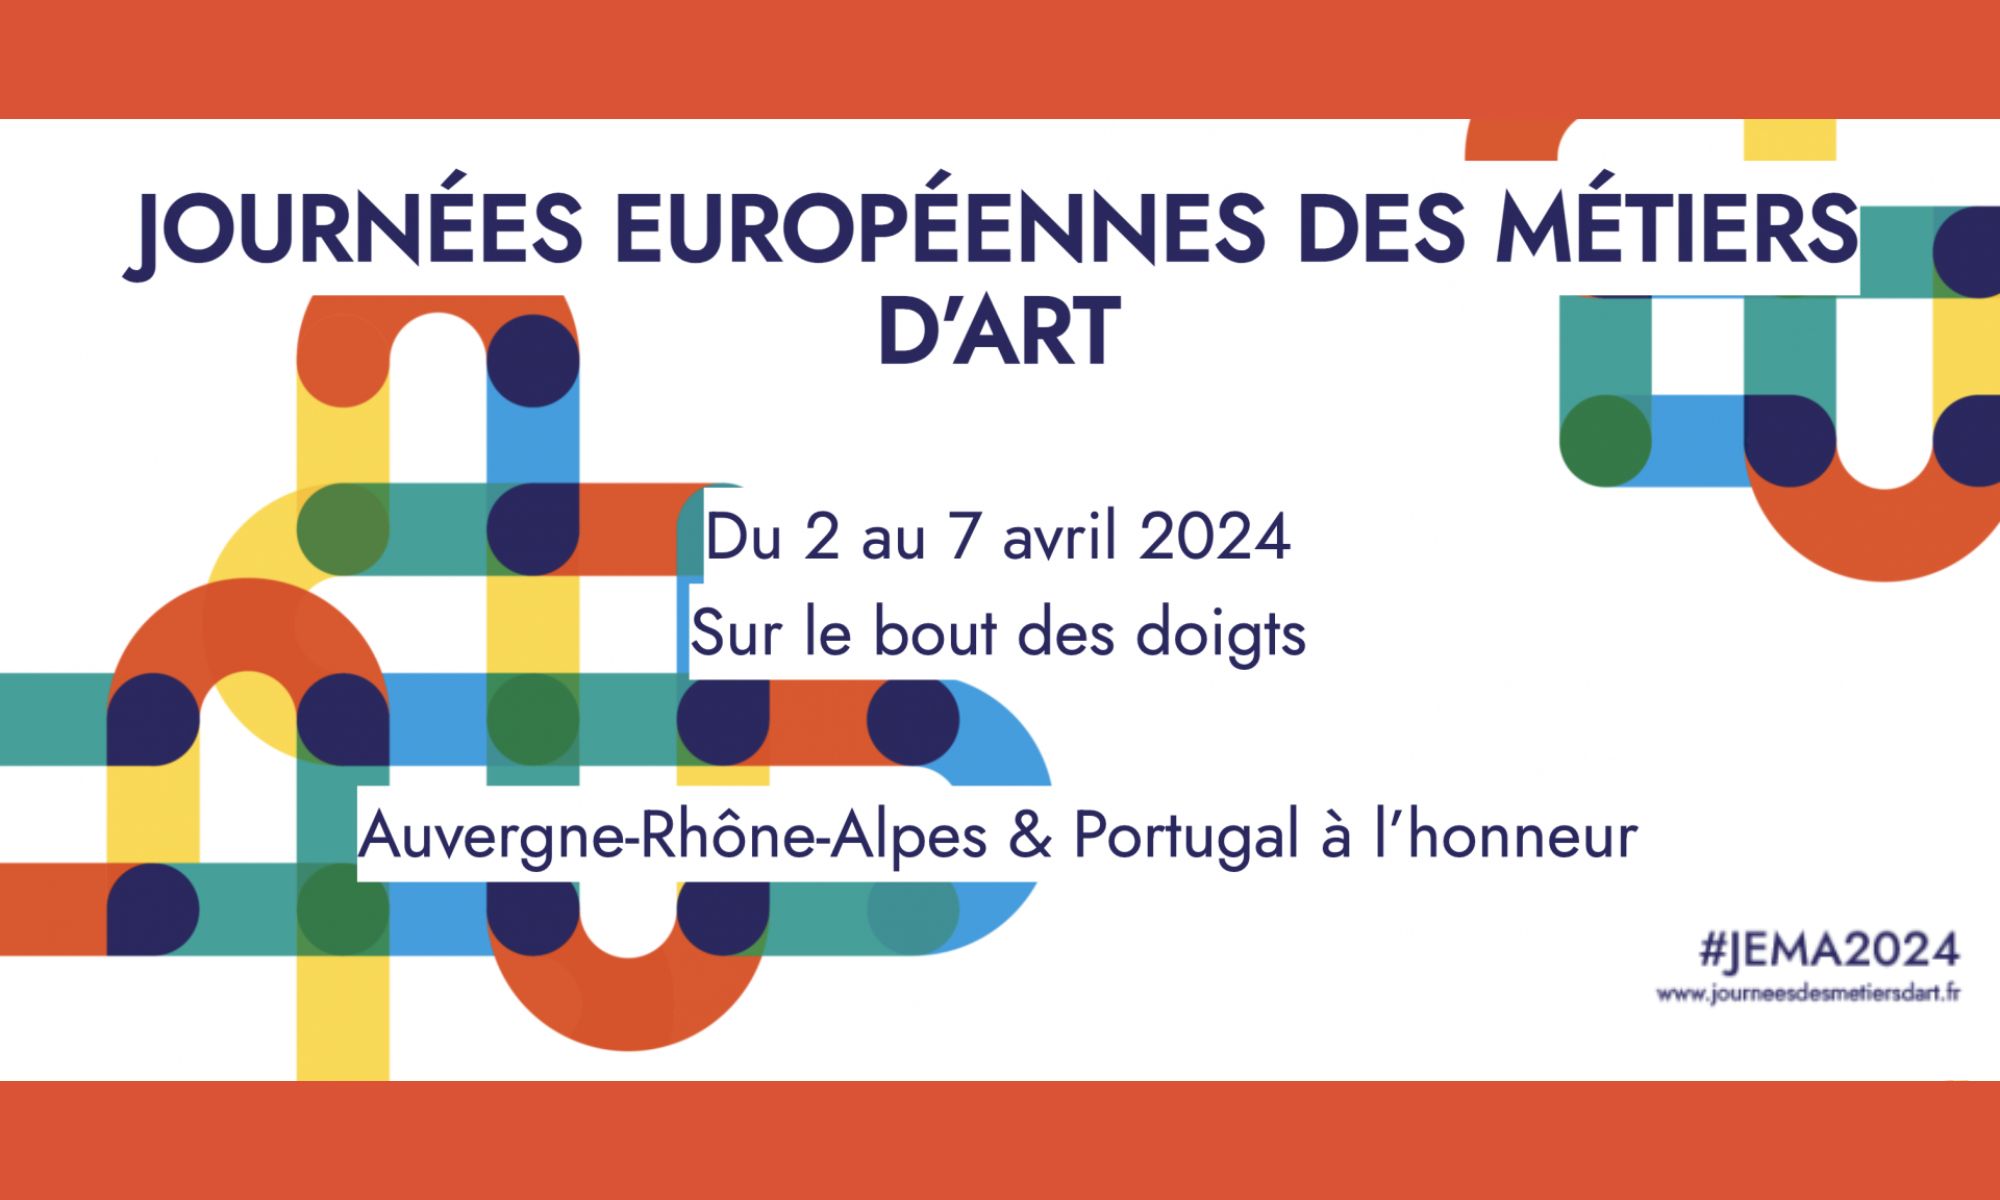 Les Journées européennes des métiers d’art auront lieu du 2 au 7 avril 2024